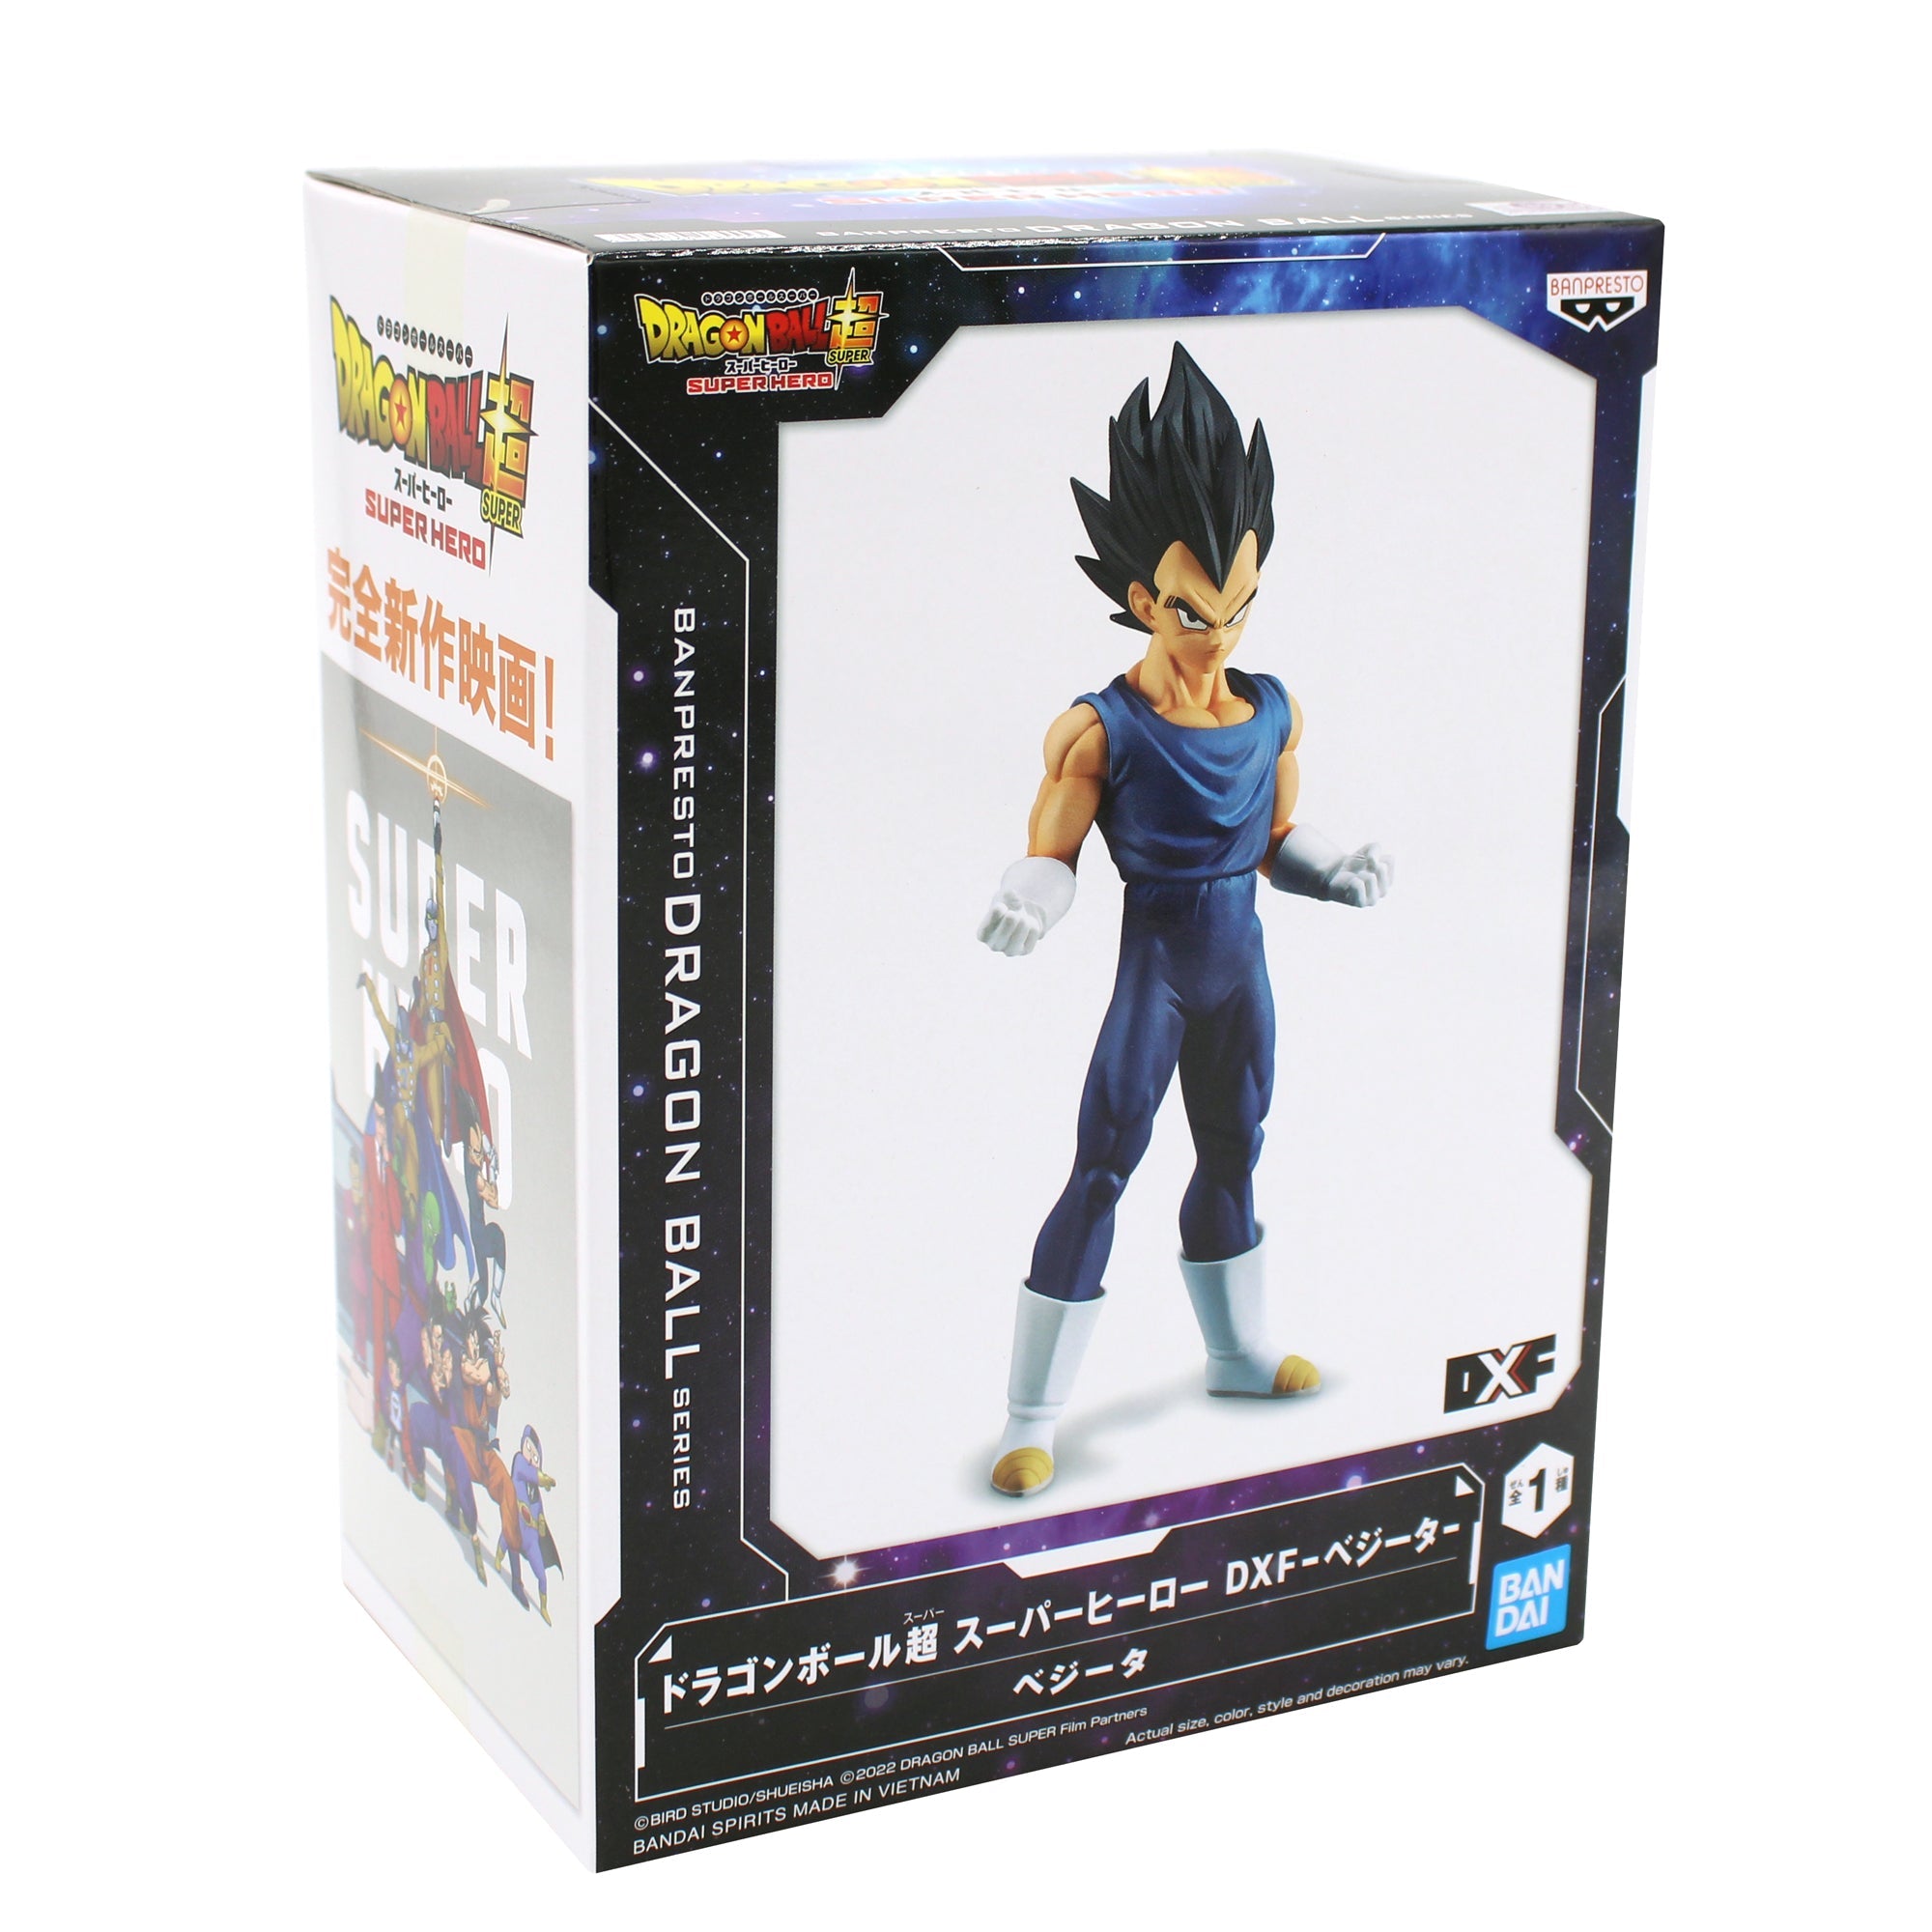 Dragon Ball Super: Super Hero Vegeta DXF Figure - Banpresto - 7